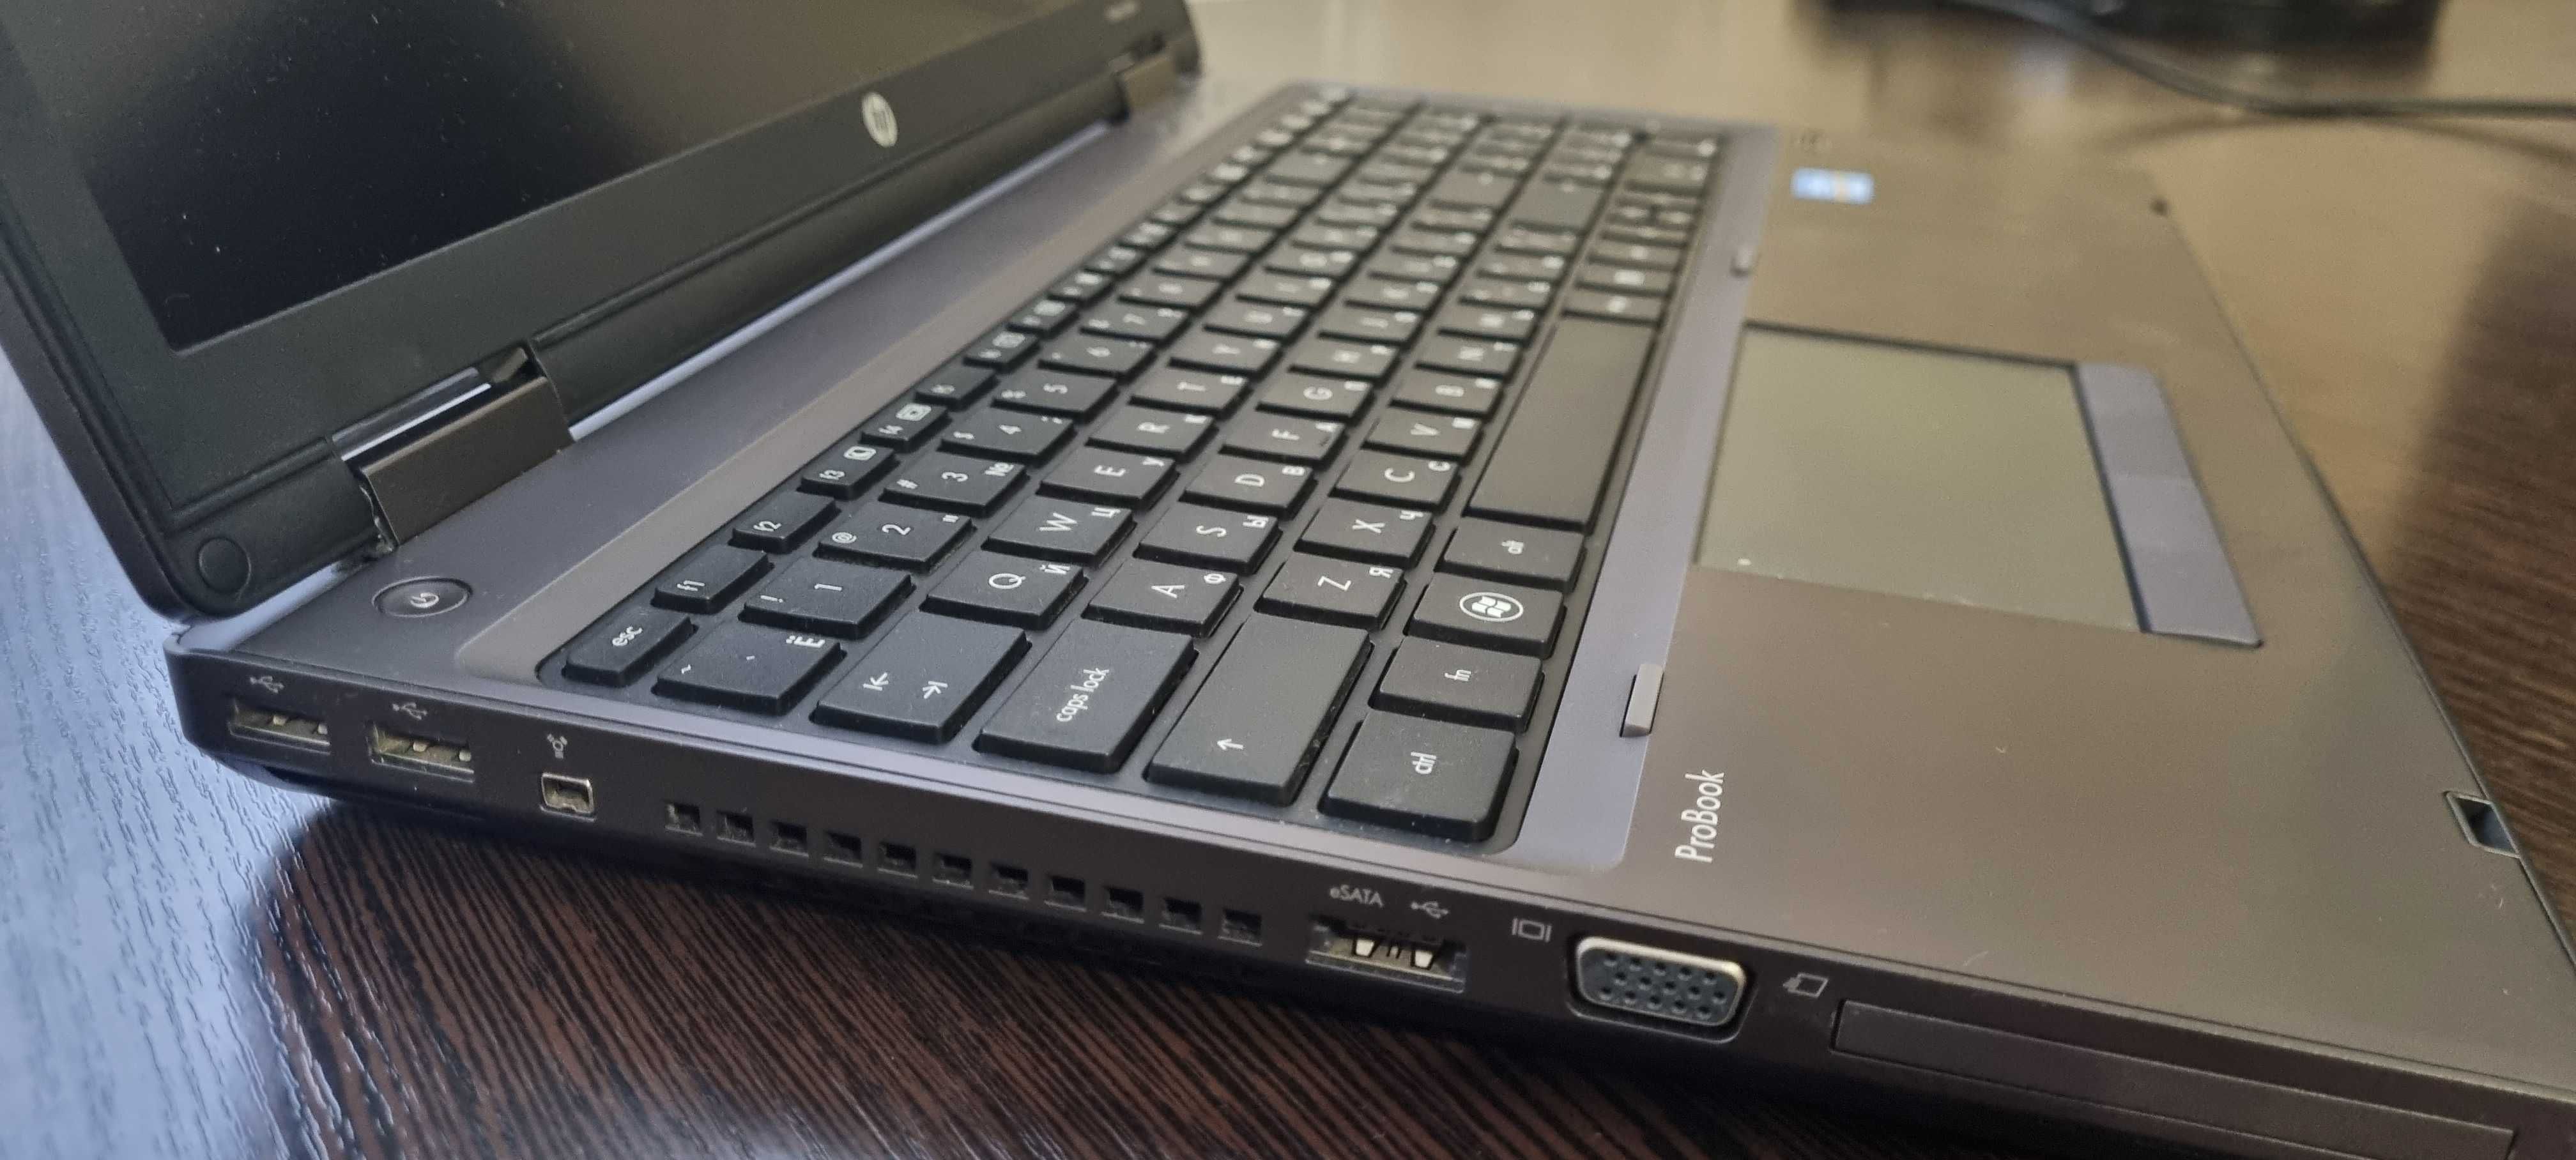 Ноутбук HP ProBook 6560b Intel Core i5-2450M, 2 GB RAM, 500 GB, 15.6"